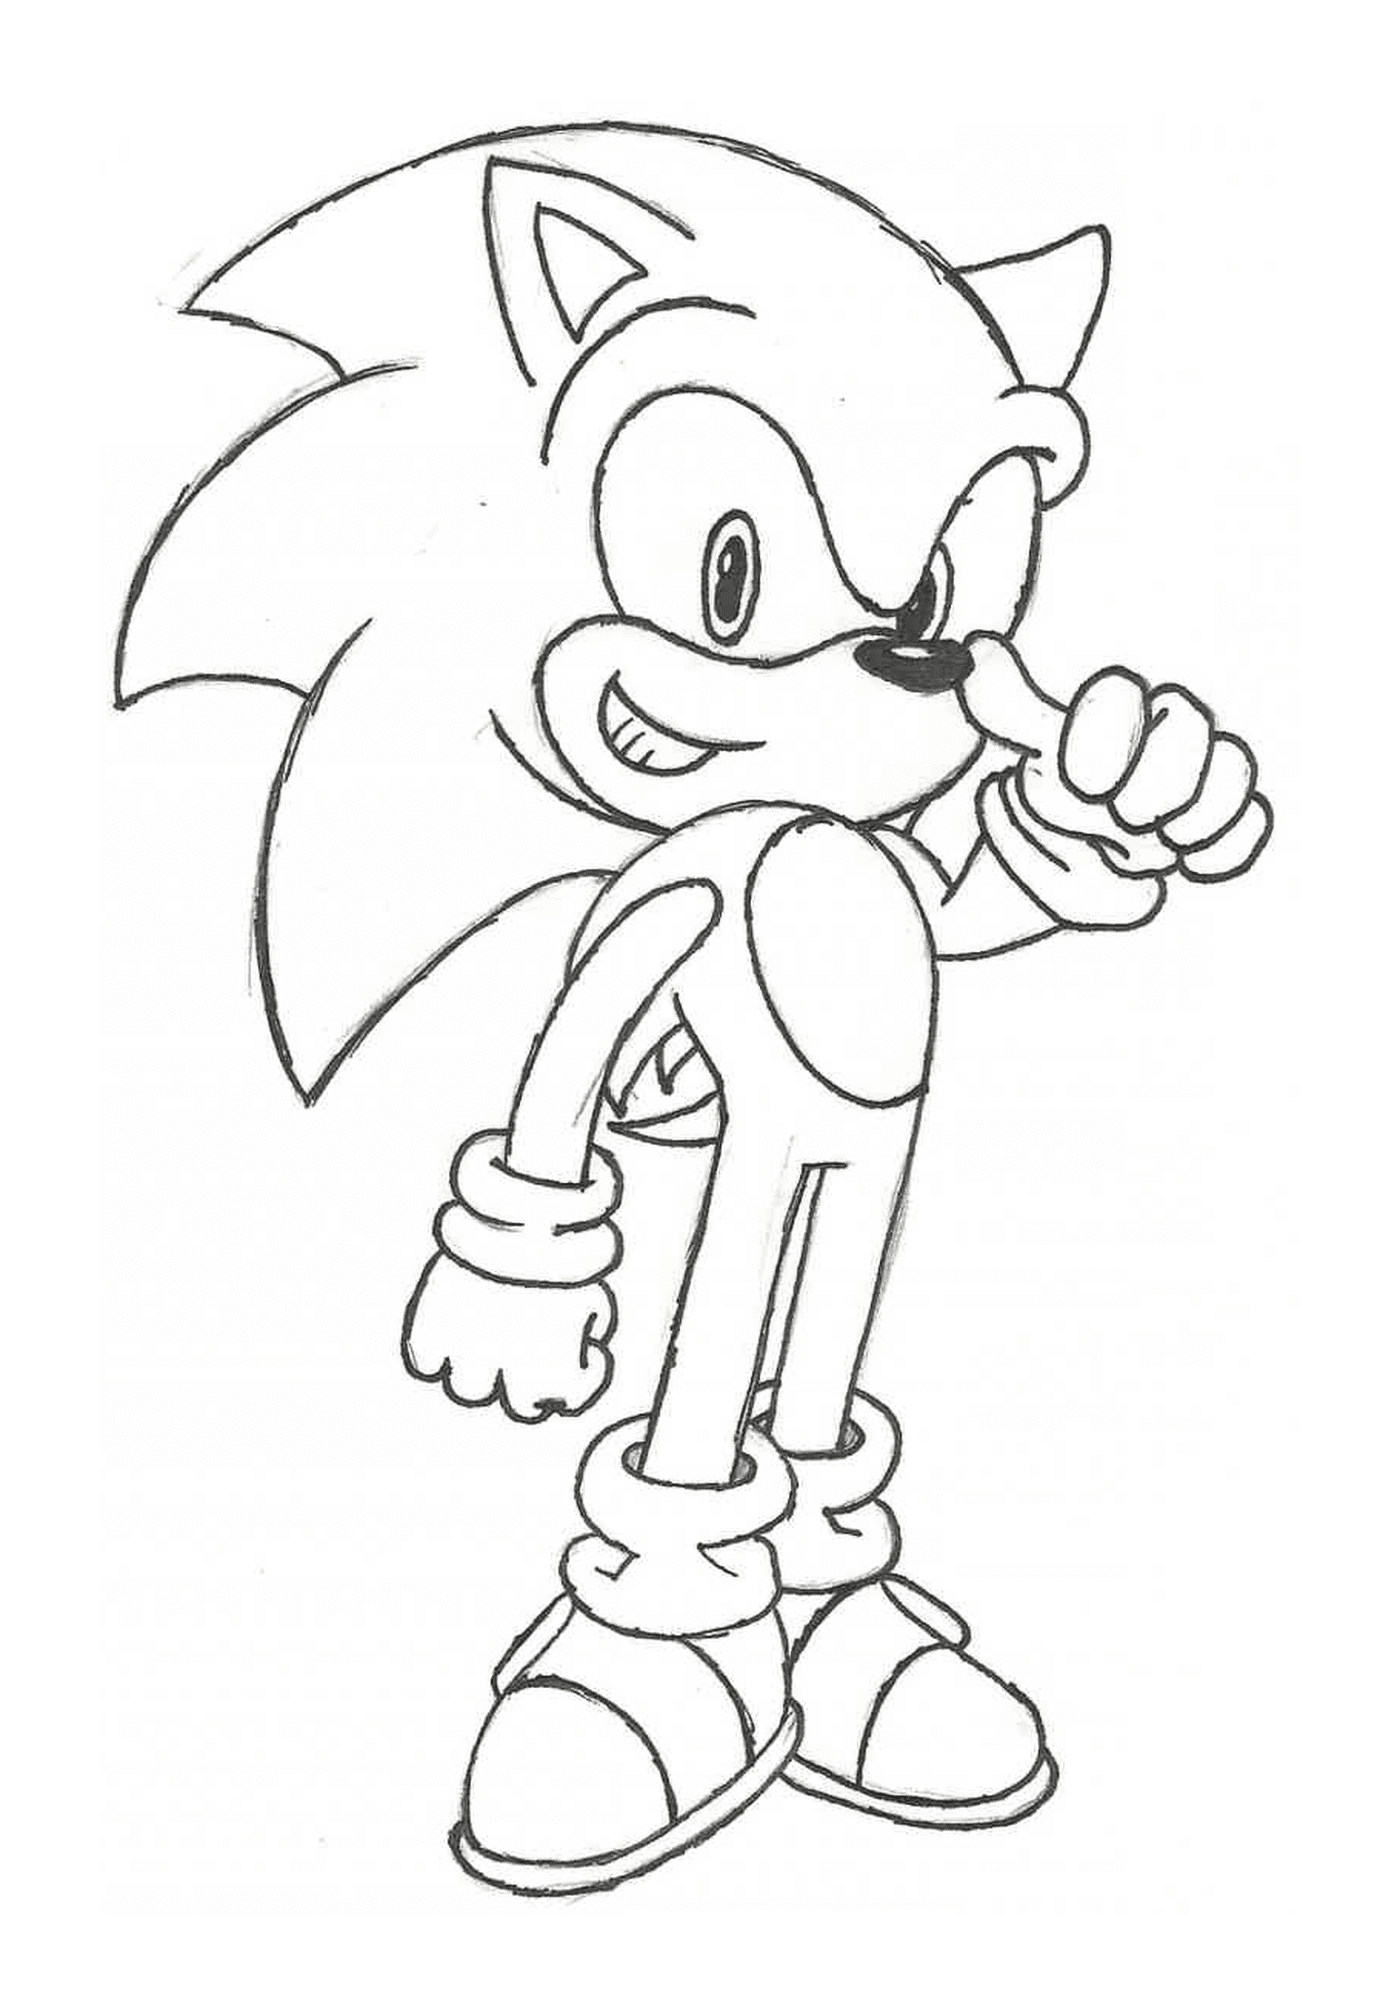   Sonic avec une pose héroïque 